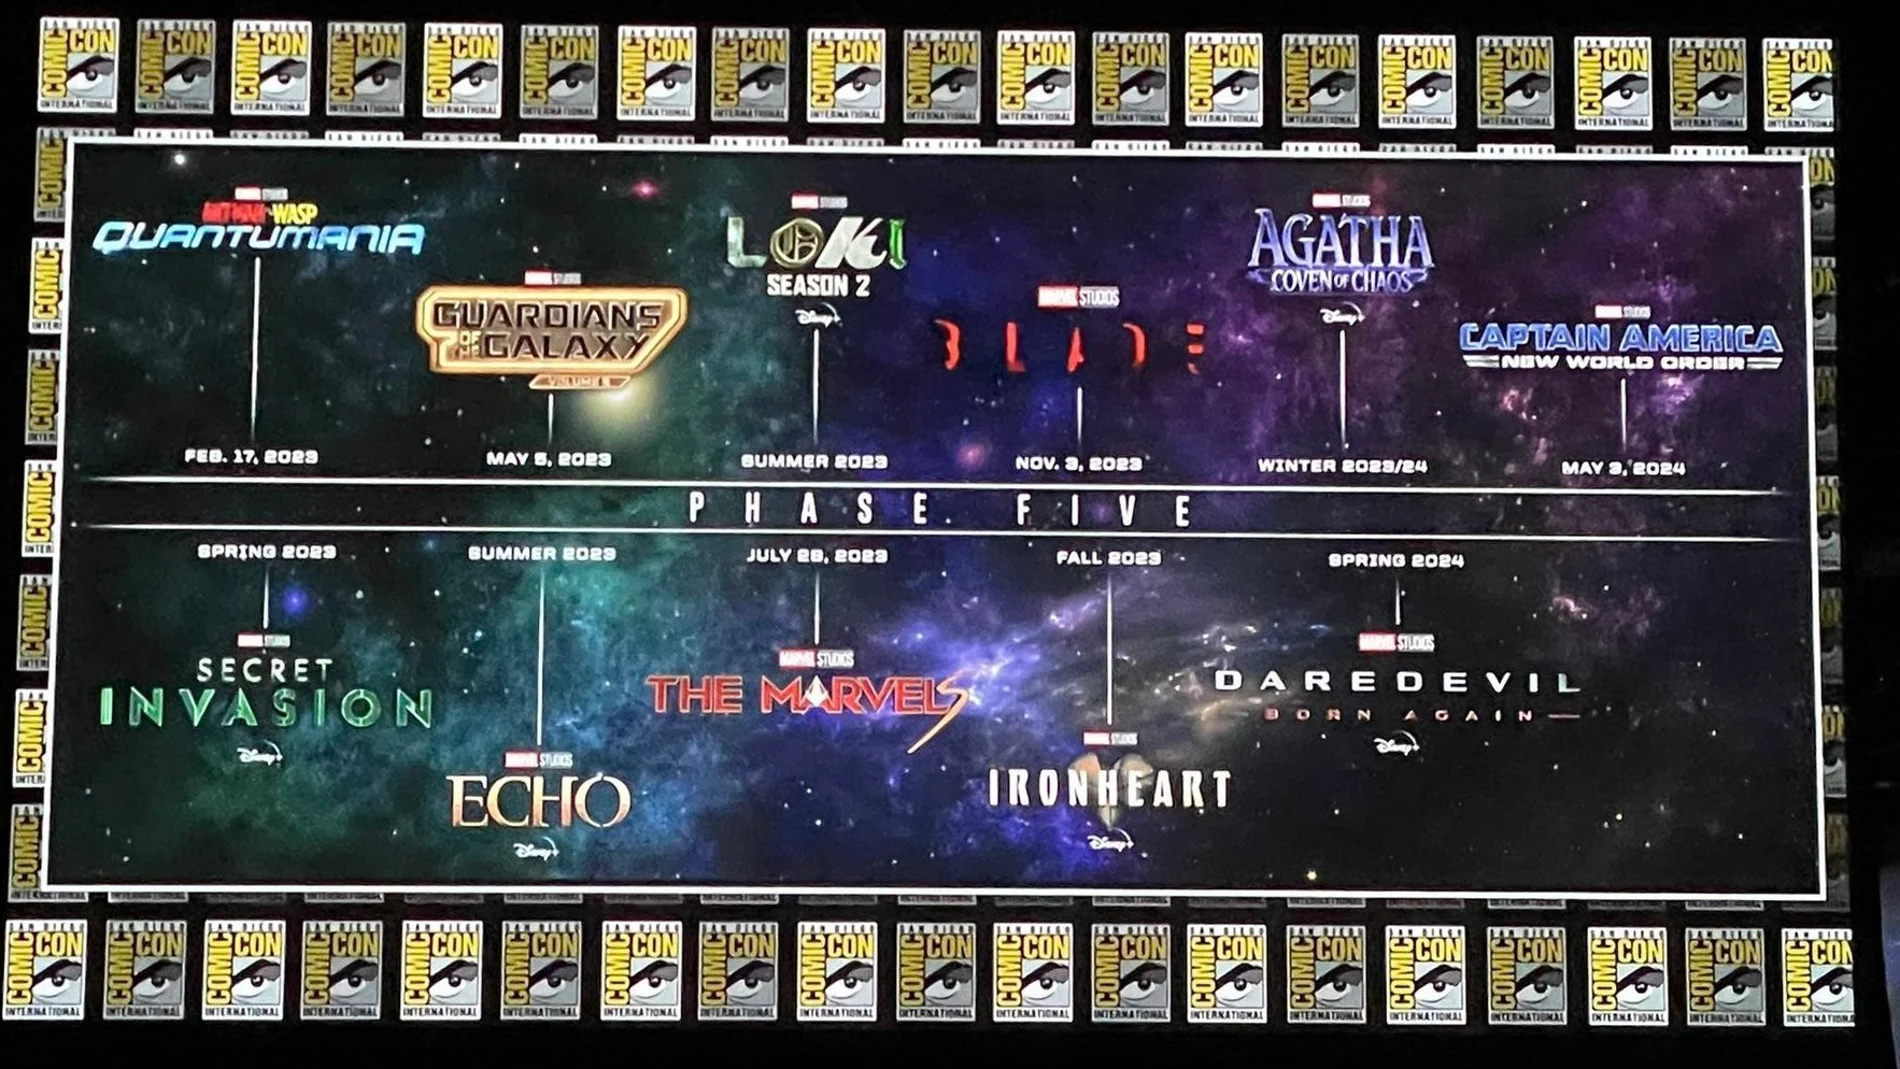 Captura del mapa de estrenos de la Fase 5 del Universo Cinematográfico de Marvel en la Comic-Con de San Diego 2022.